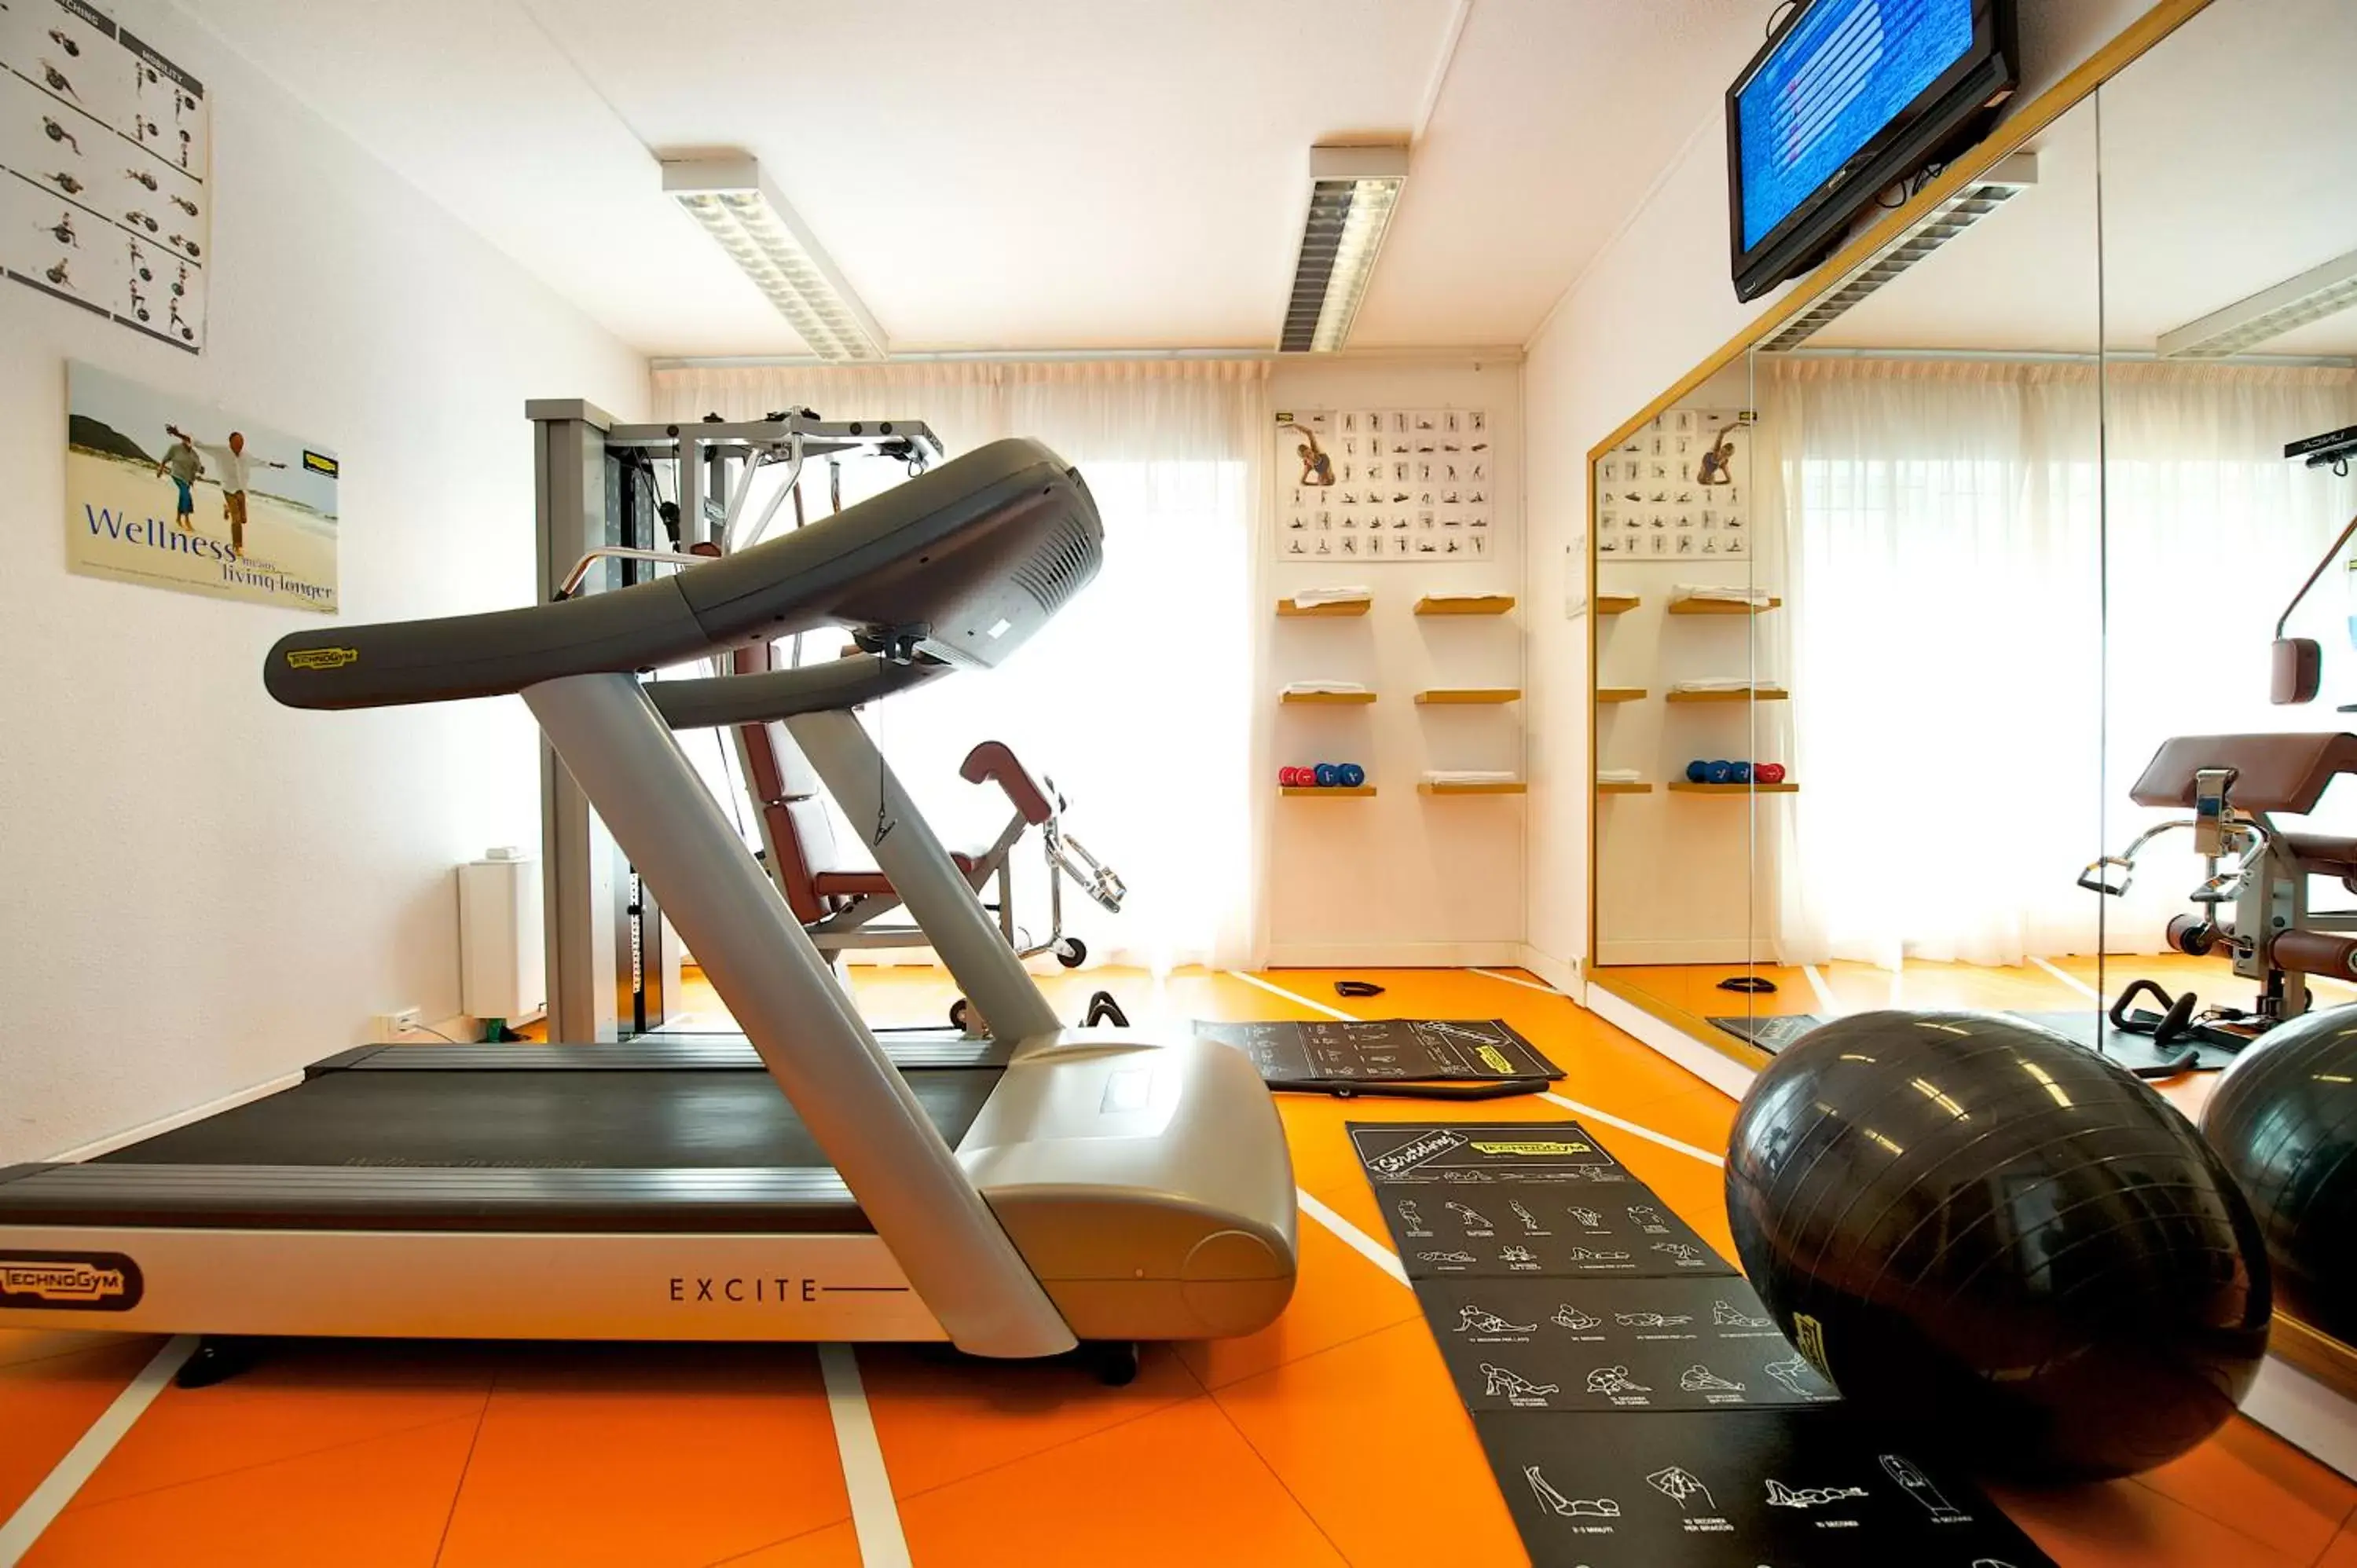 Fitness centre/facilities, Fitness Center/Facilities in Novotel Firenze Nord Aeroporto